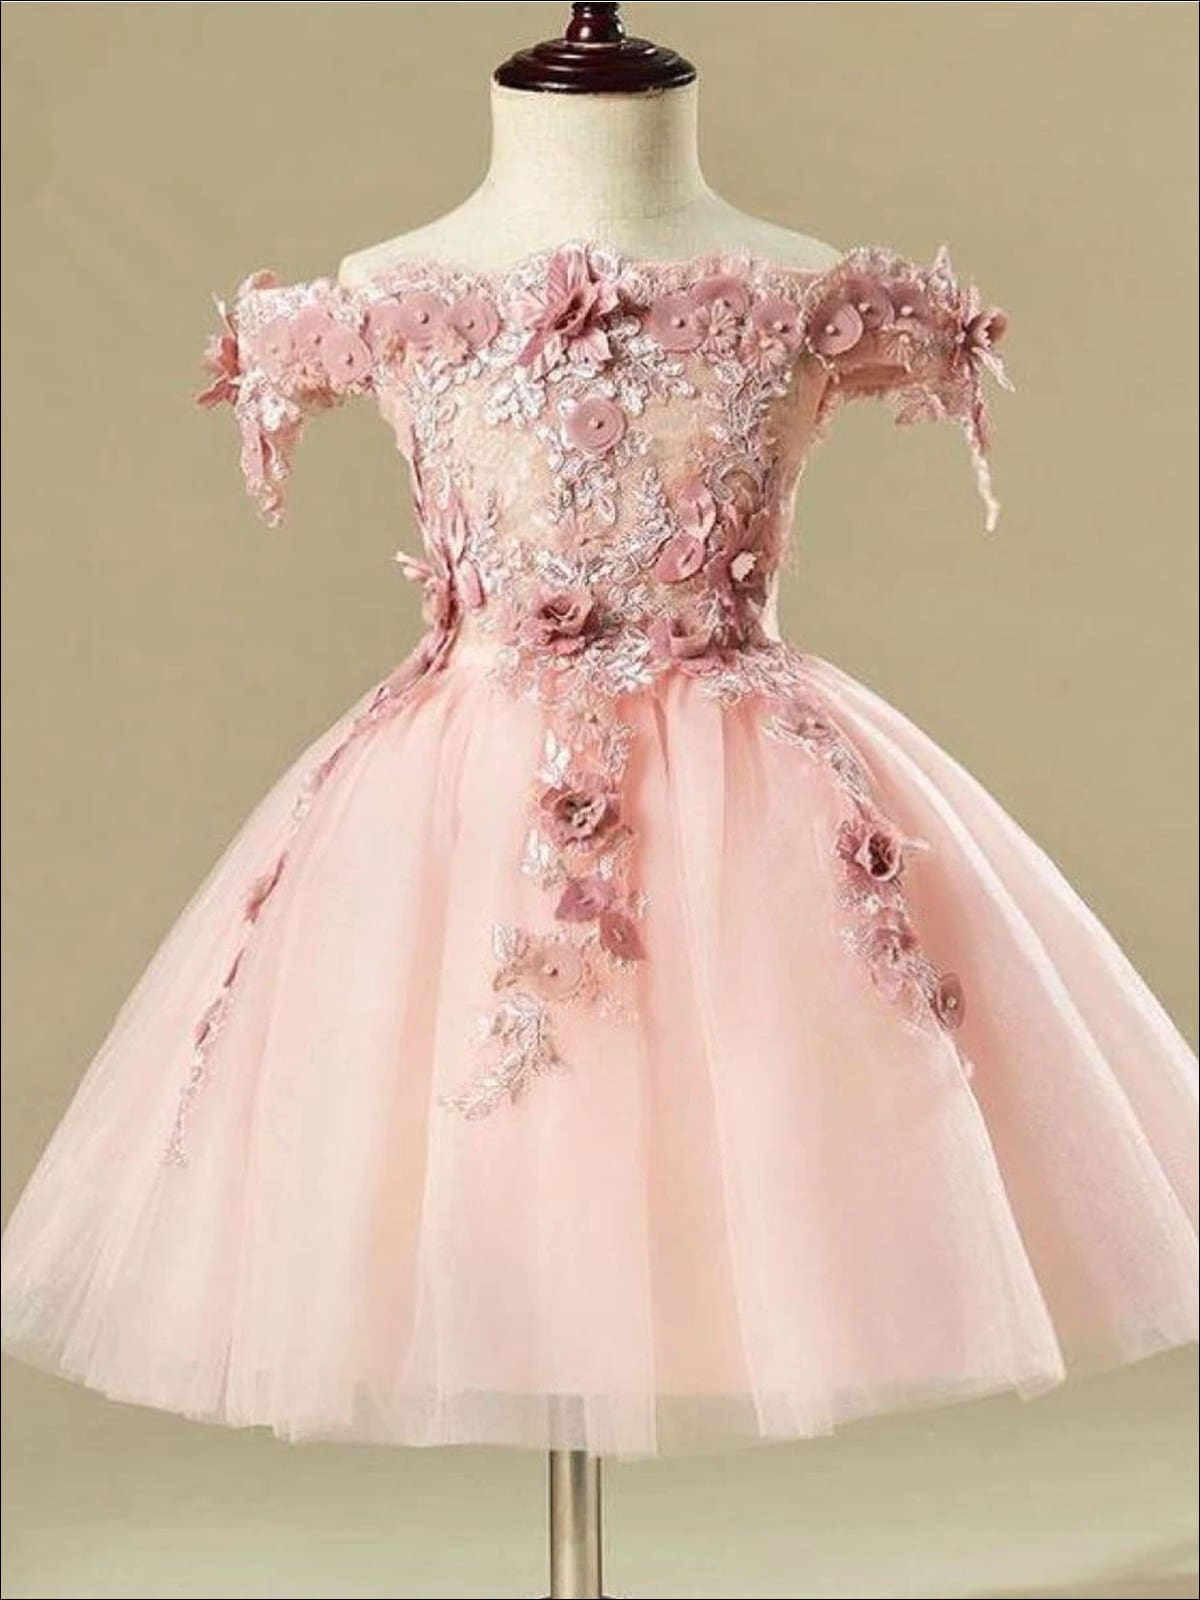 Buy Festive Rose Pink Jumpsuit Online for Little Girls - ForeverKidz